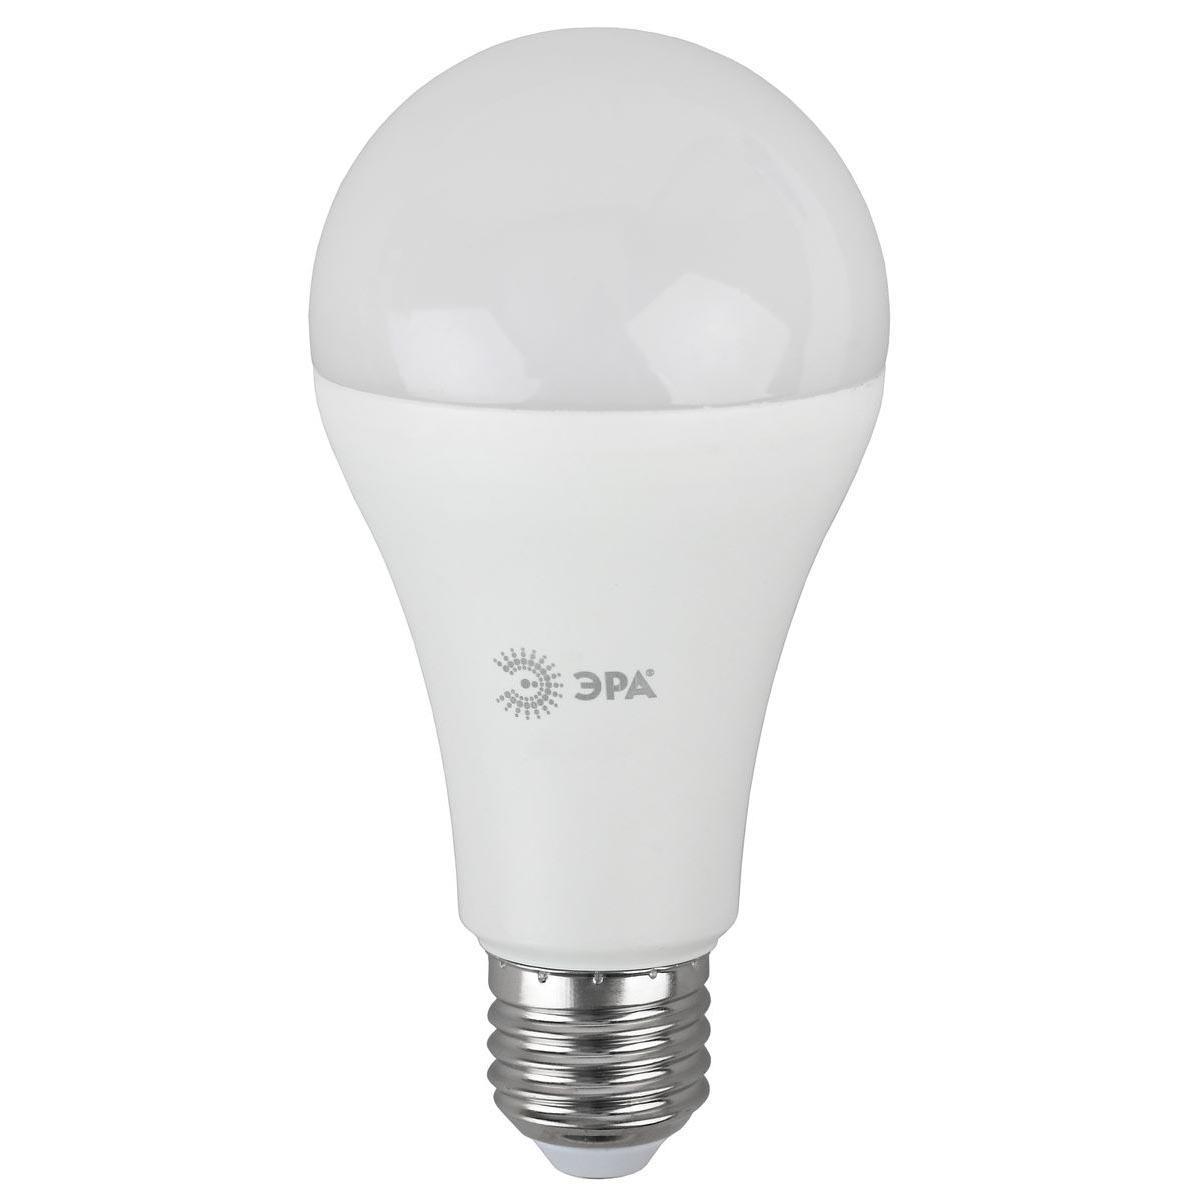 Лампа светодиодная ЭРА E27 11W 4000K матовая LED A60-11W-127V-840-E27 Б0049100